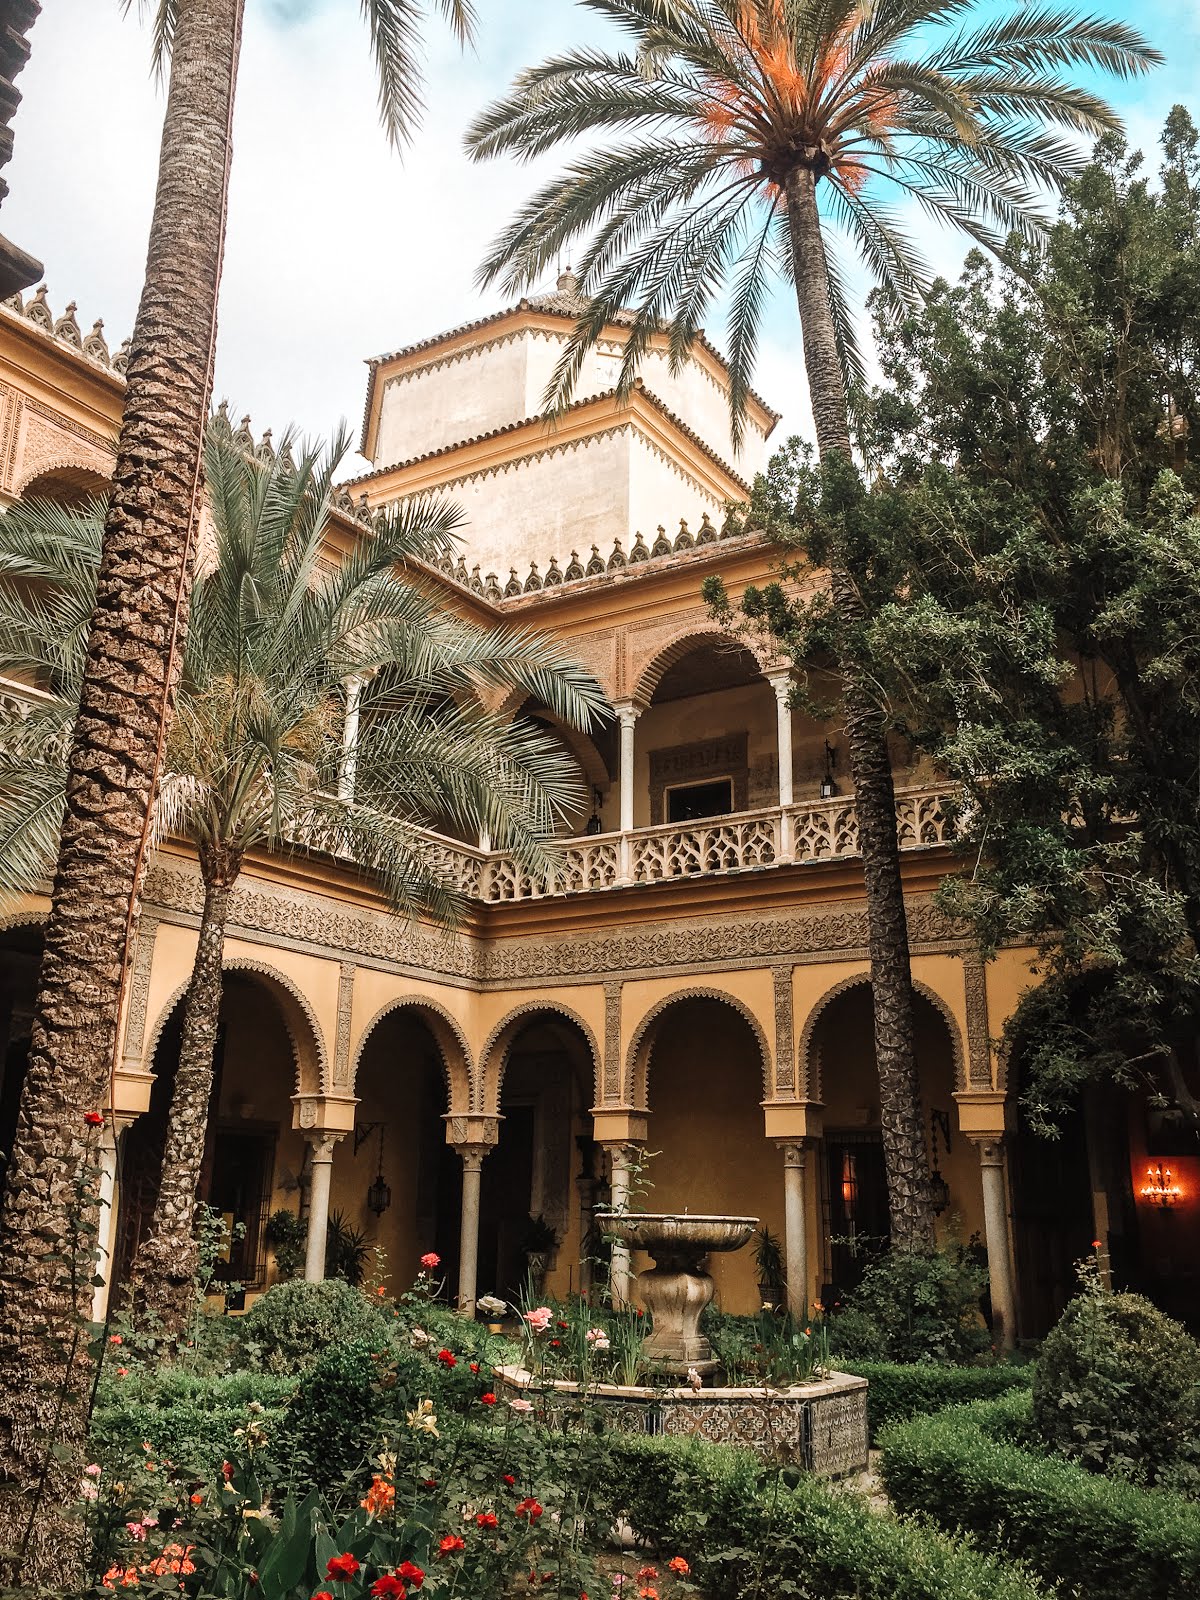 vue sur l'une des façades du palacio de las duenas à séville depuis le jardin avec au premier plan des arbustes en fleurs et une fontaine et à l'arrière plan la façade jaune du palais et ses arcades